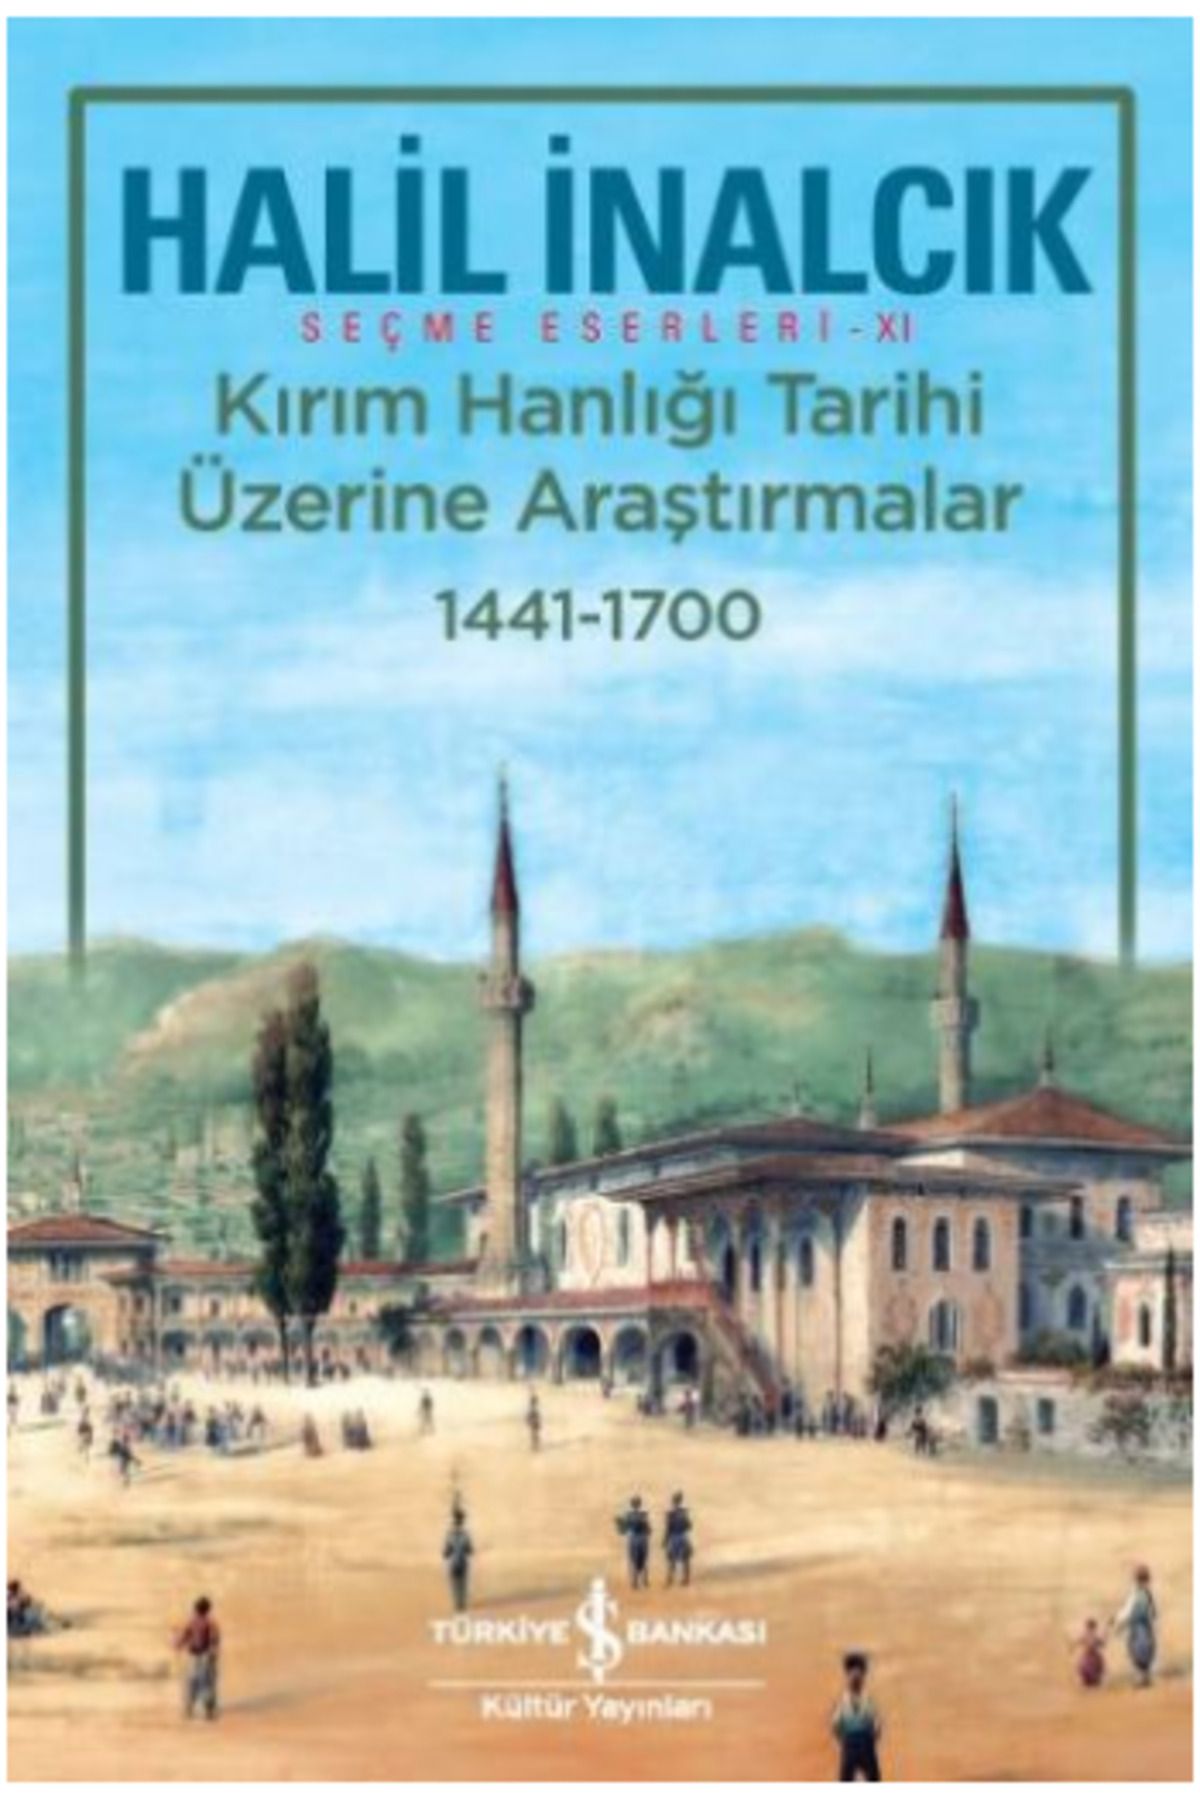 Türkiye İş Bankası Kültür Yayınları Kırım Hanlığı Tarihi Üzerine Araştırmalar 1441 - 1700